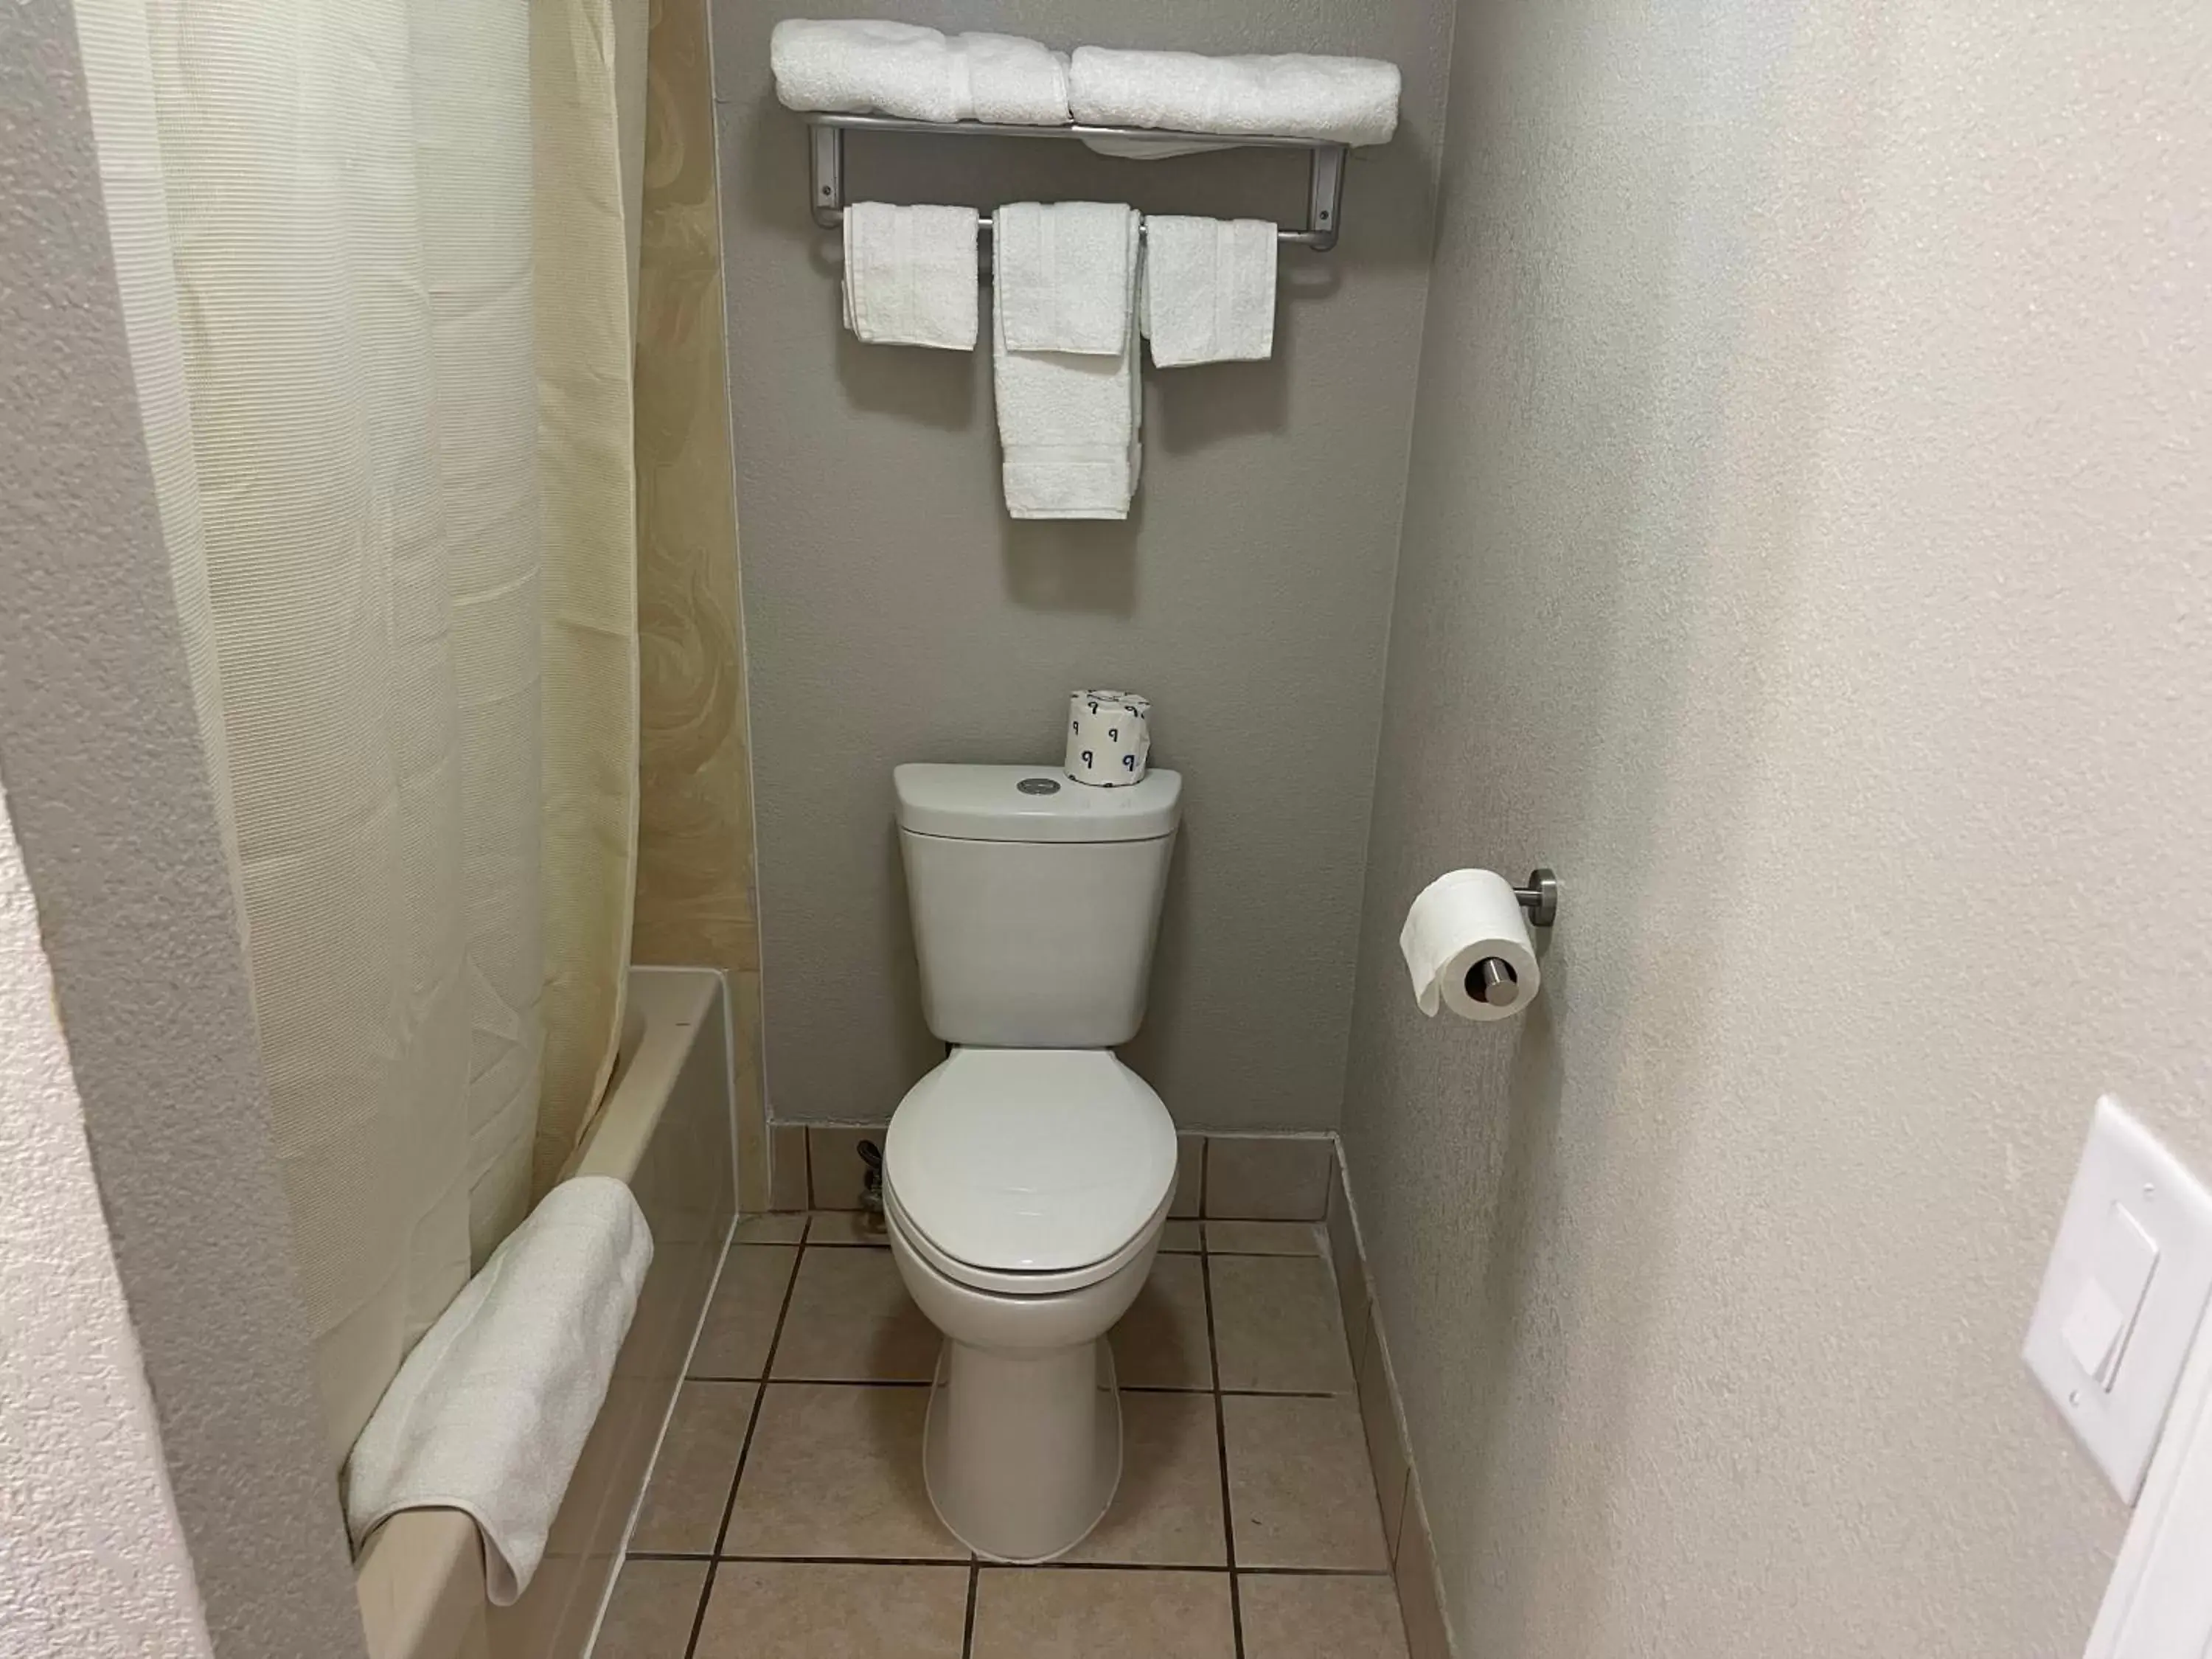 Toilet, Bathroom in Stratford House Inn